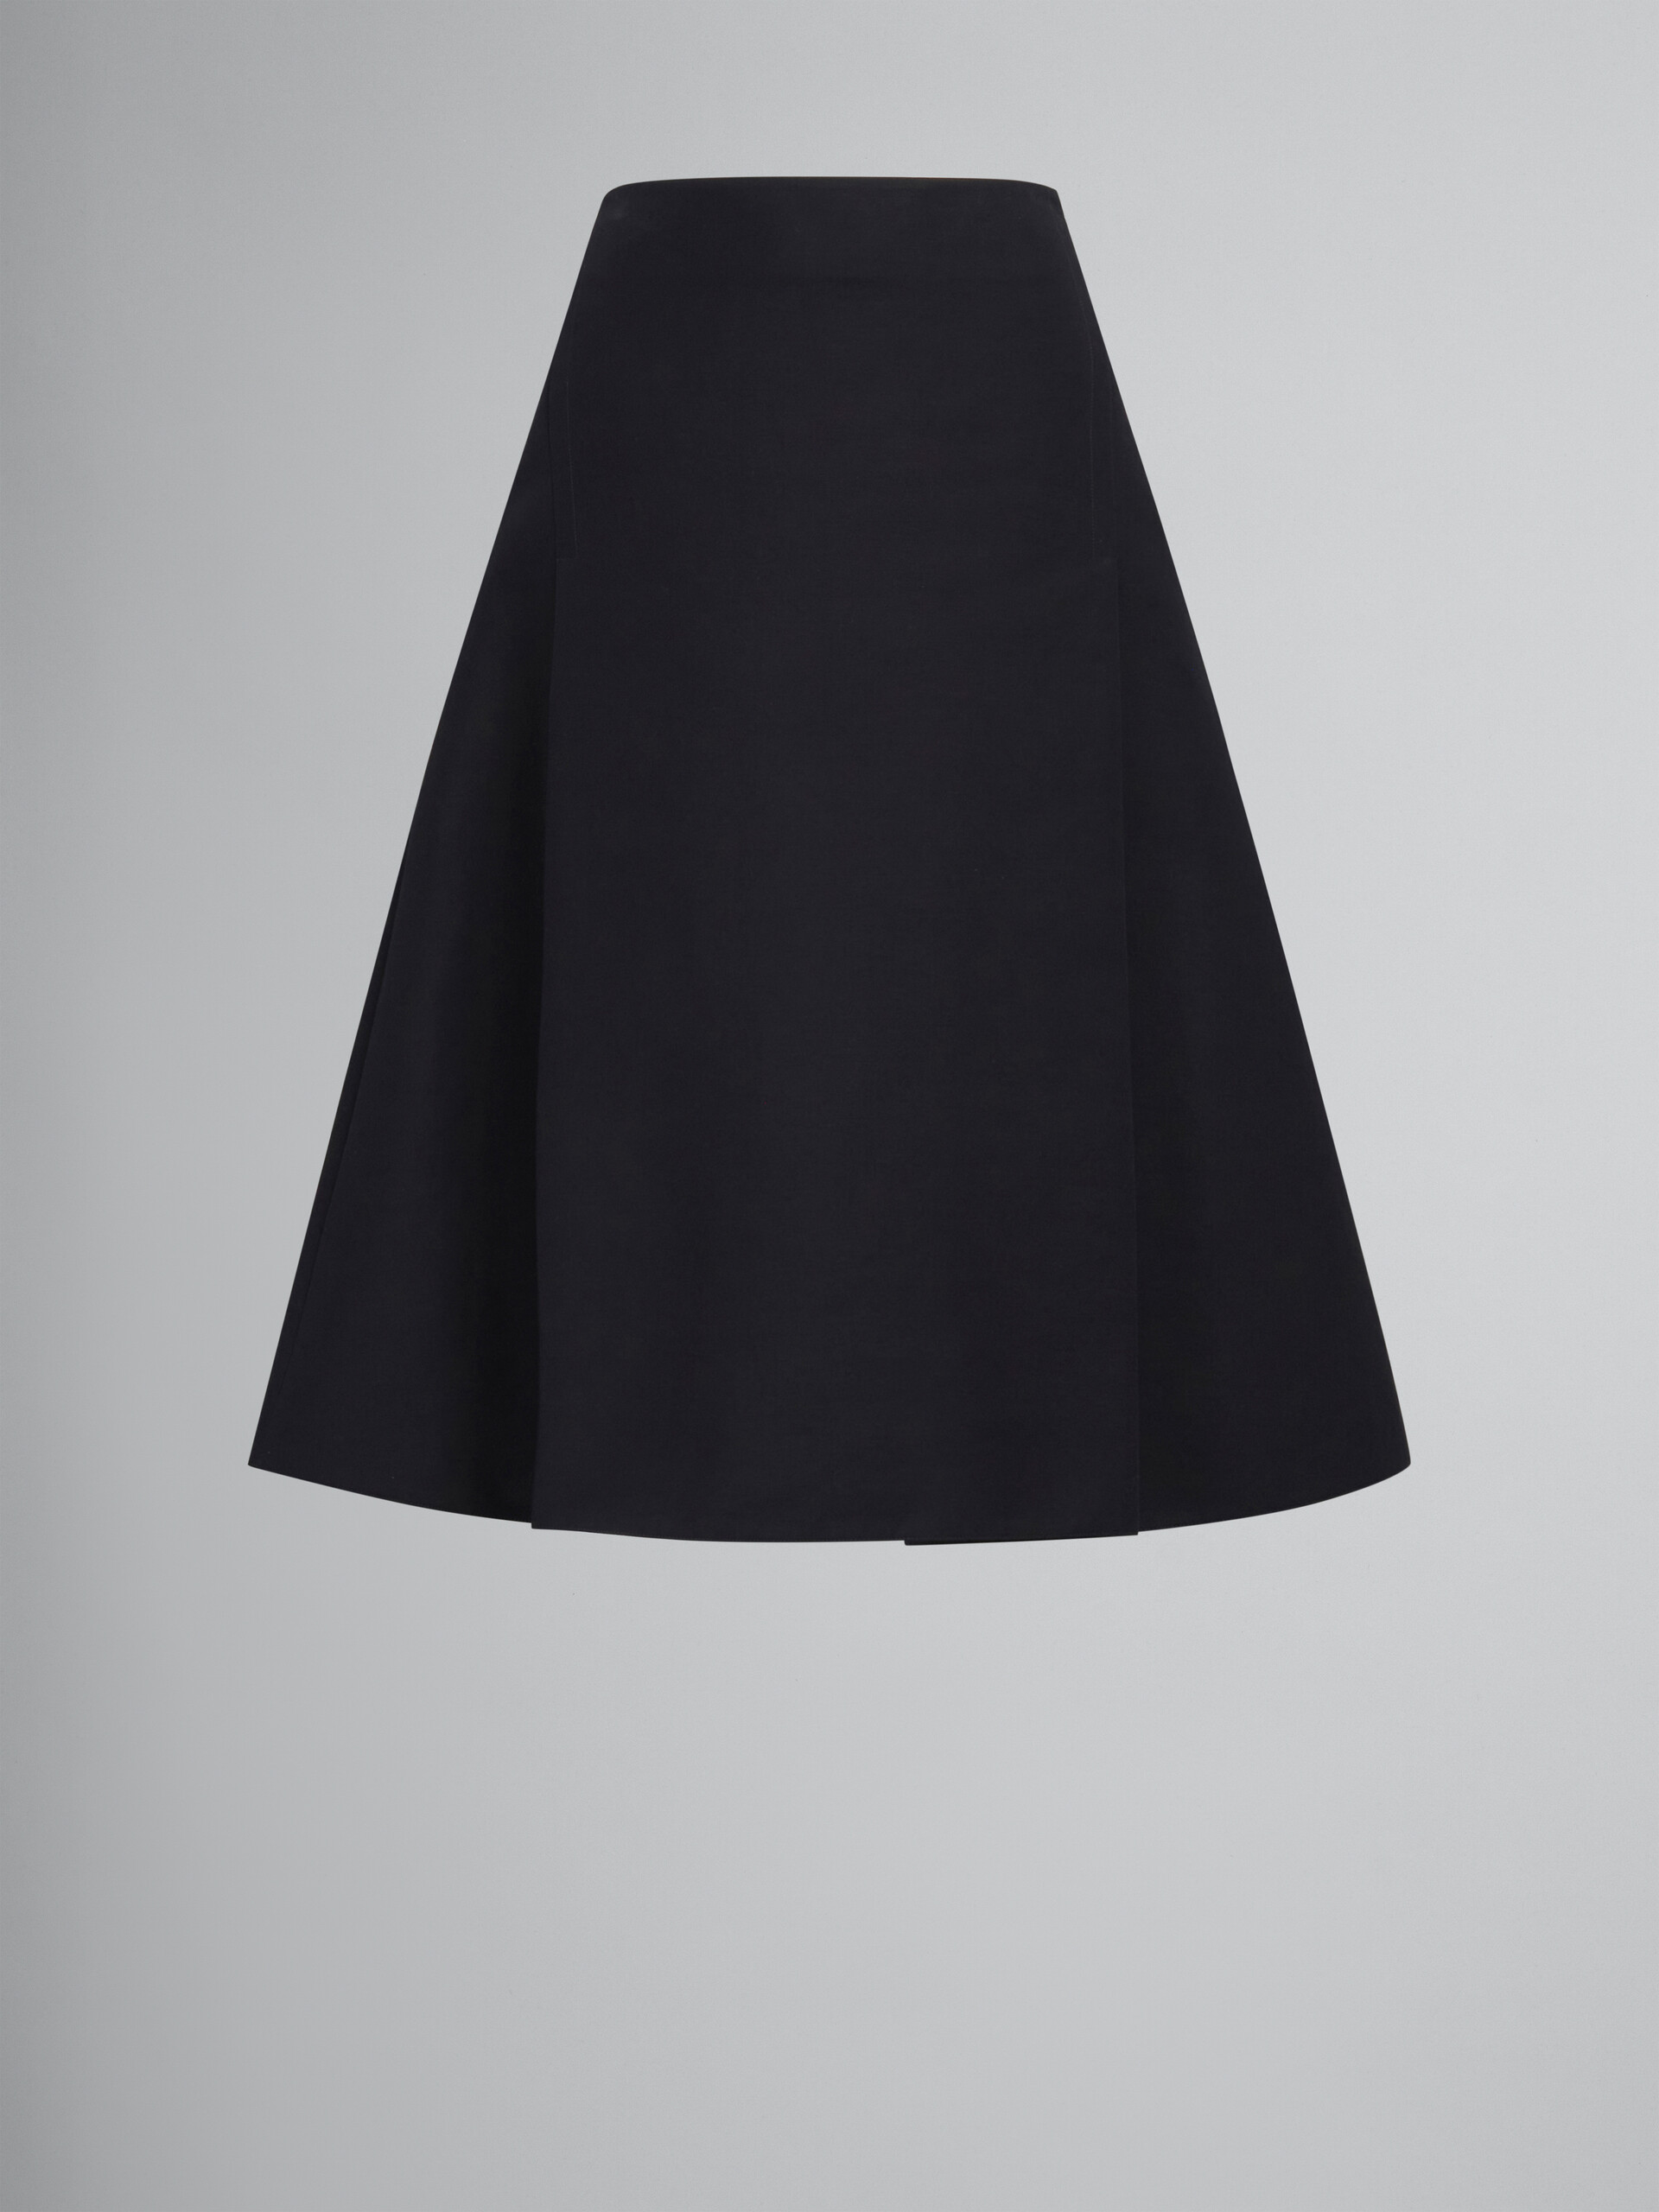 Falda midi negra de cady con maxiplisados - Faldas - Image 1